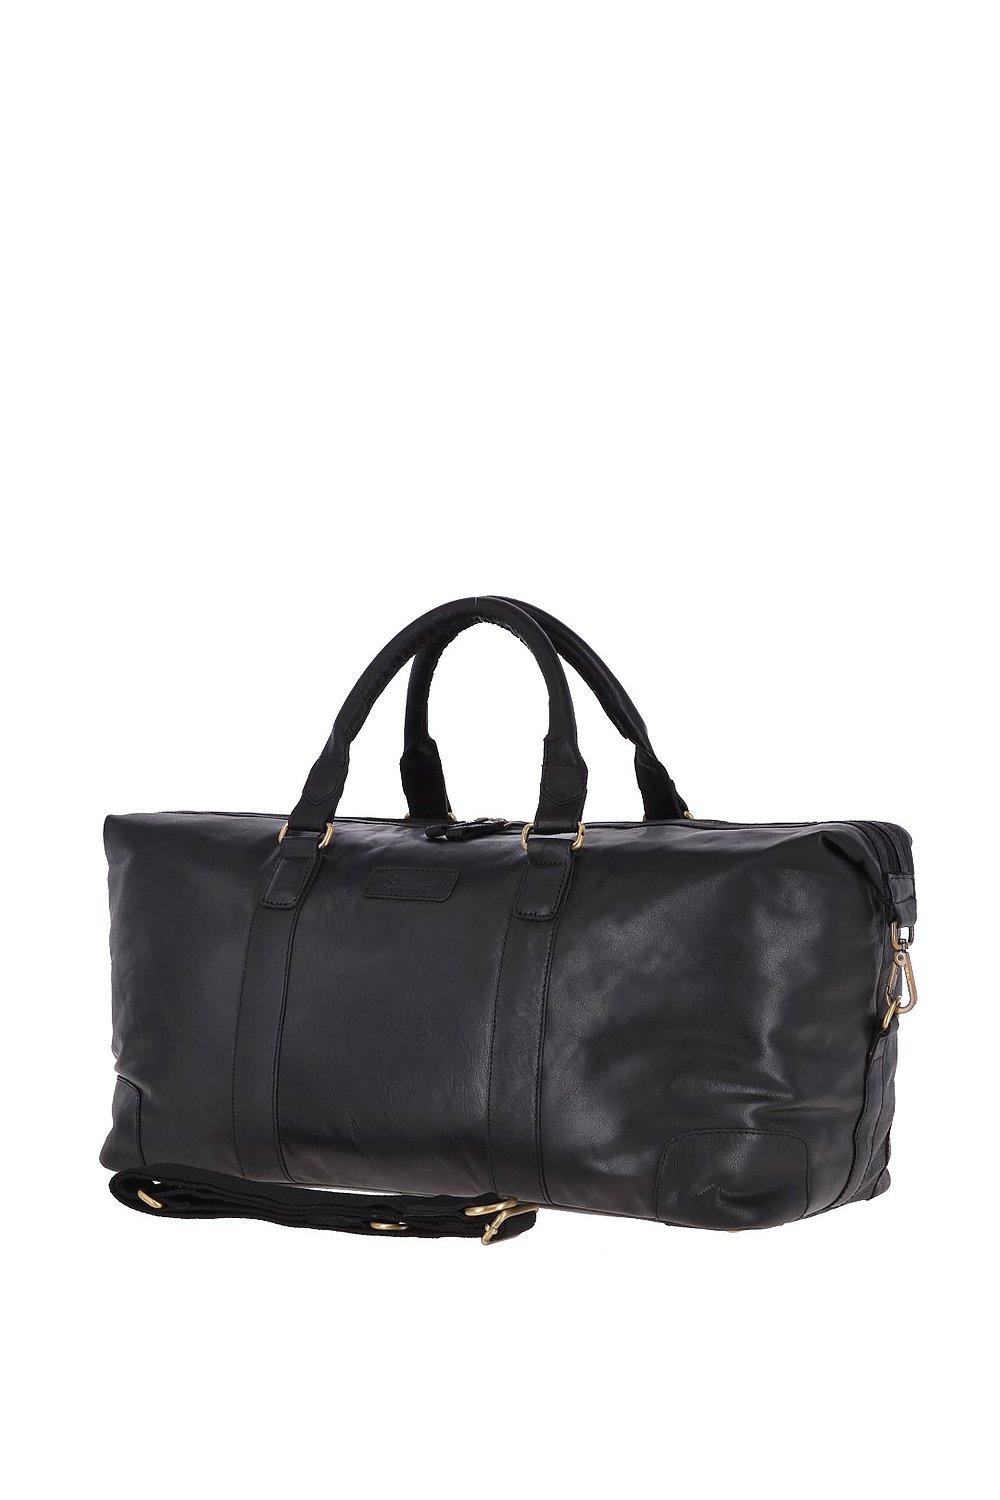 Большая винтажная дорожная сумка из натуральной кожи Ashwood Leather, черный сумка планшет повседневная натуральная кожа вмещает а4 внутренний карман регулируемый ремень черный